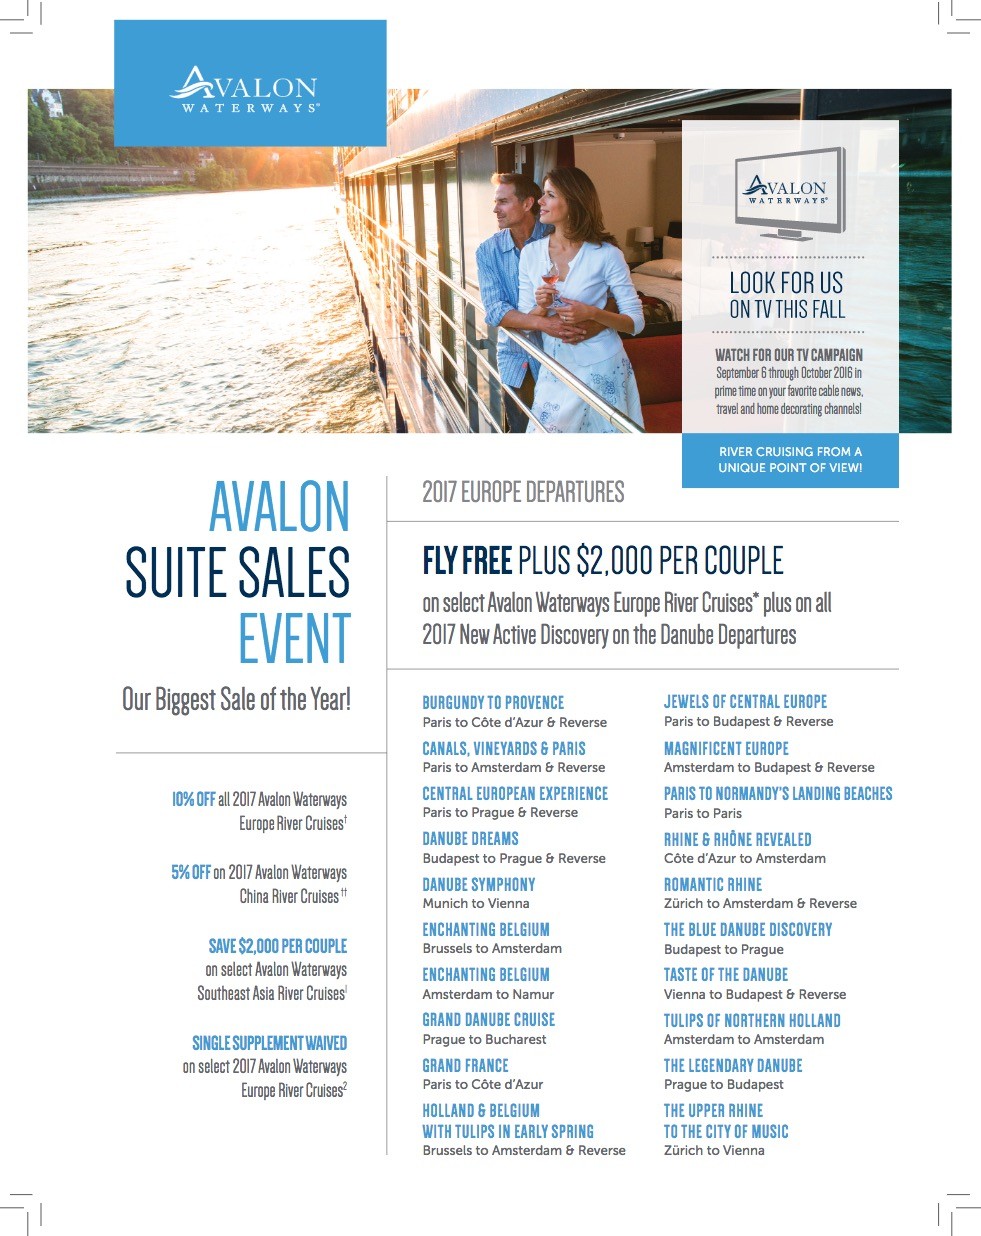 avalon-waterways-suite-sales-event